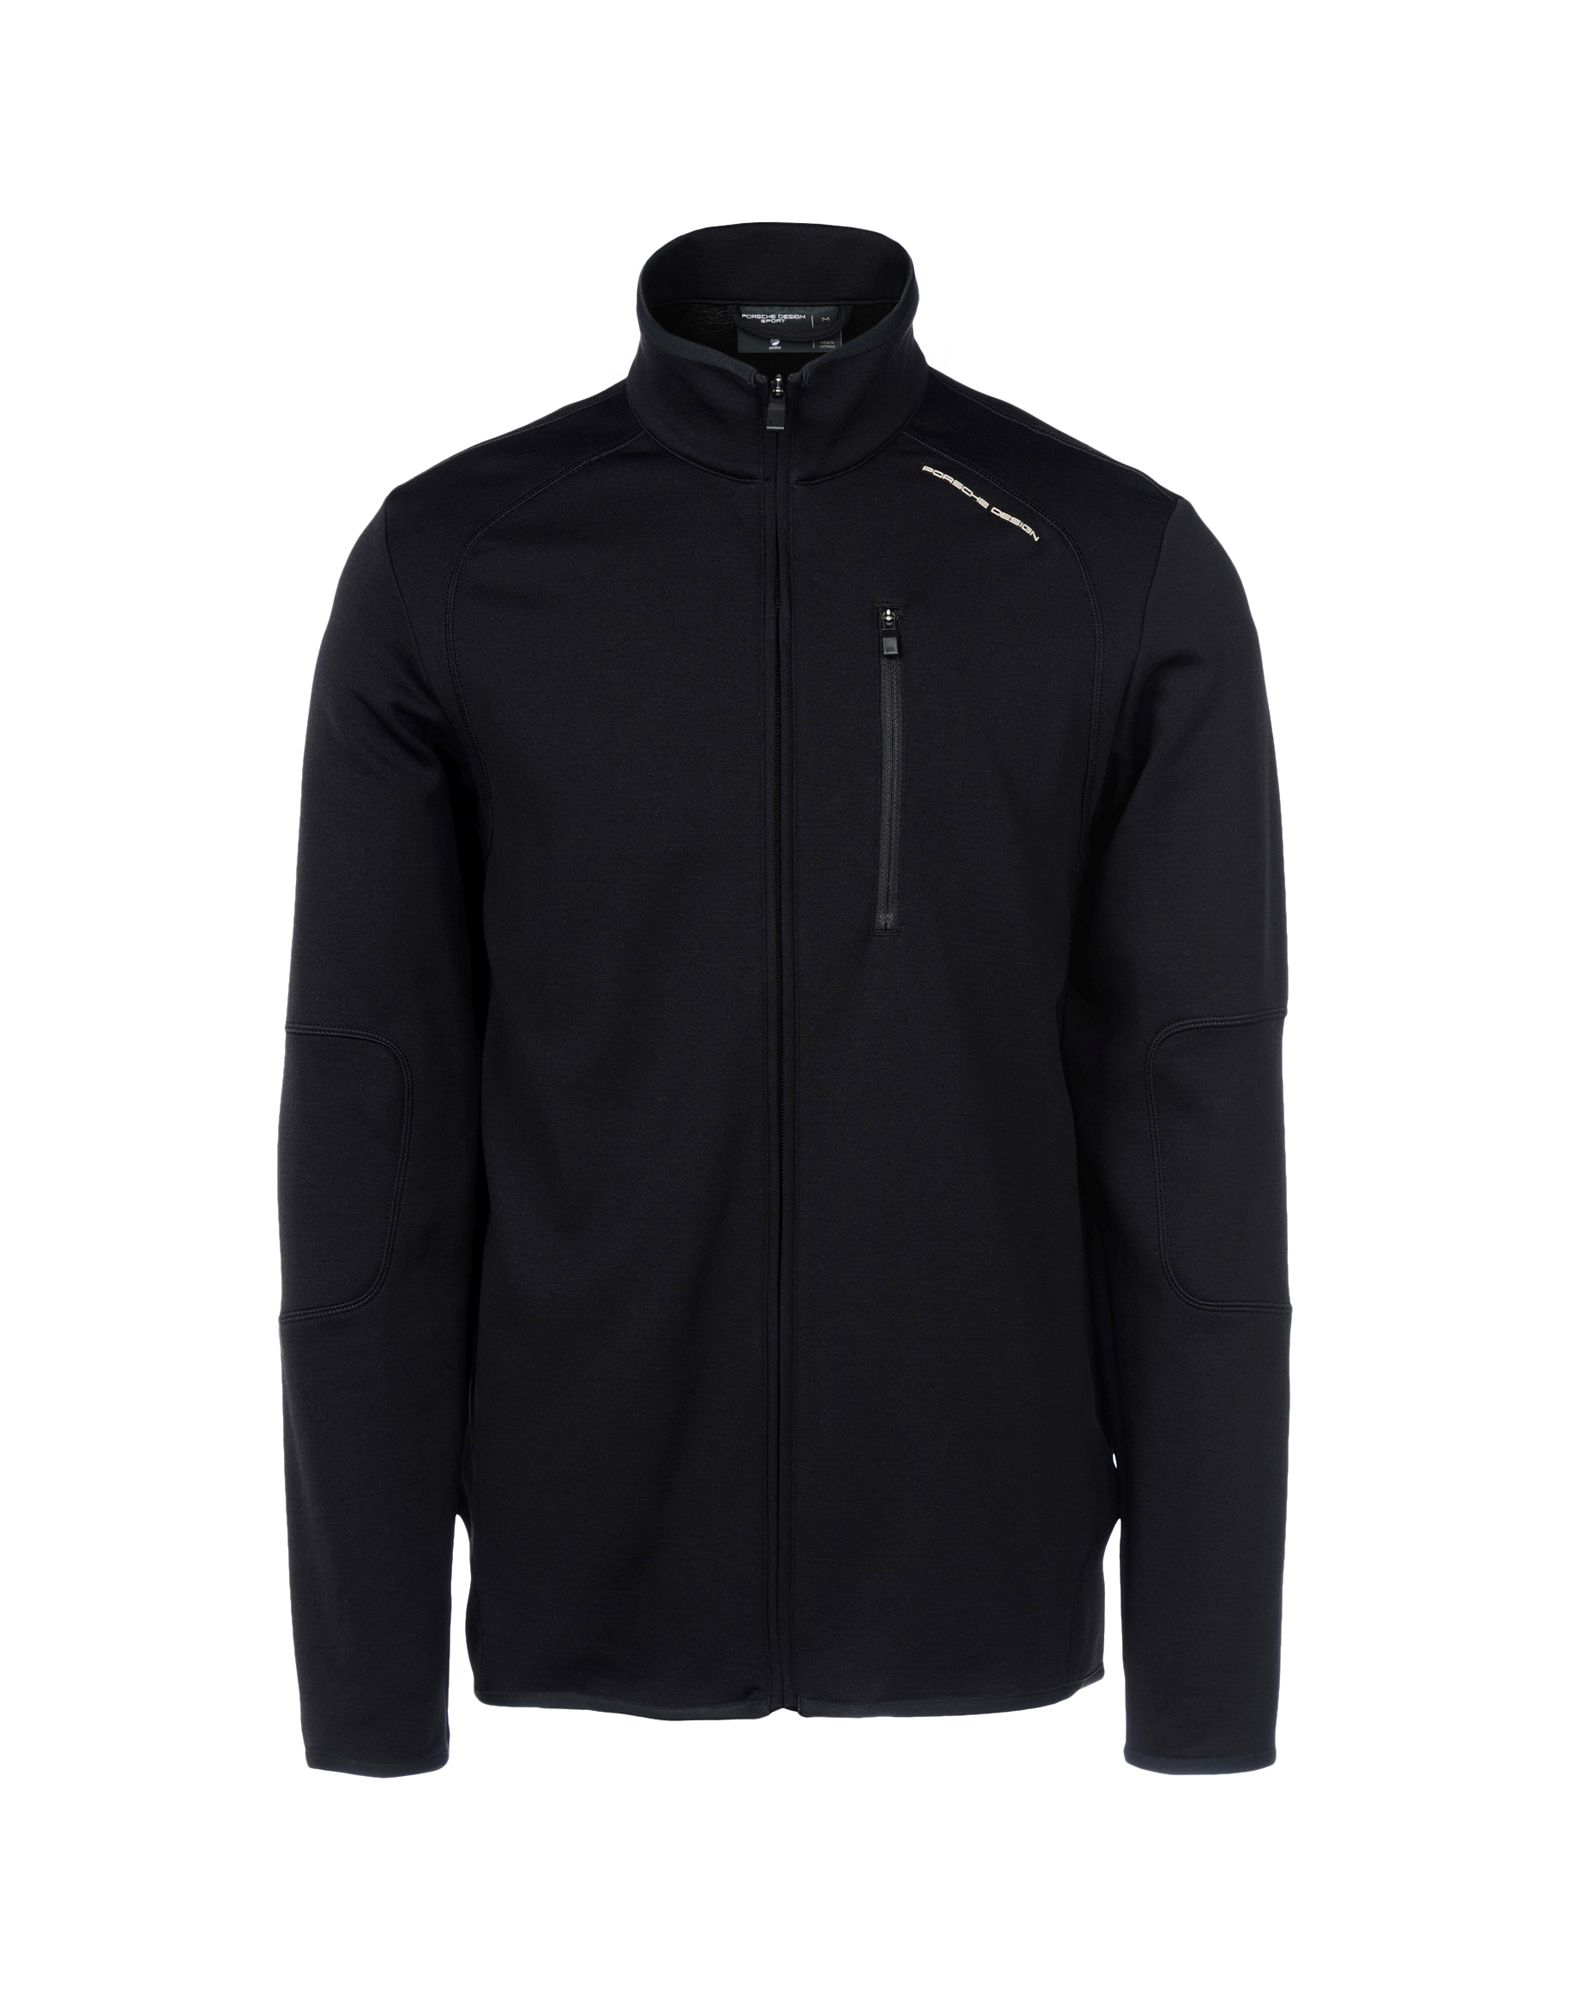 Porsche design Sweatshirt in Black for Men - Save 31% | Lyst